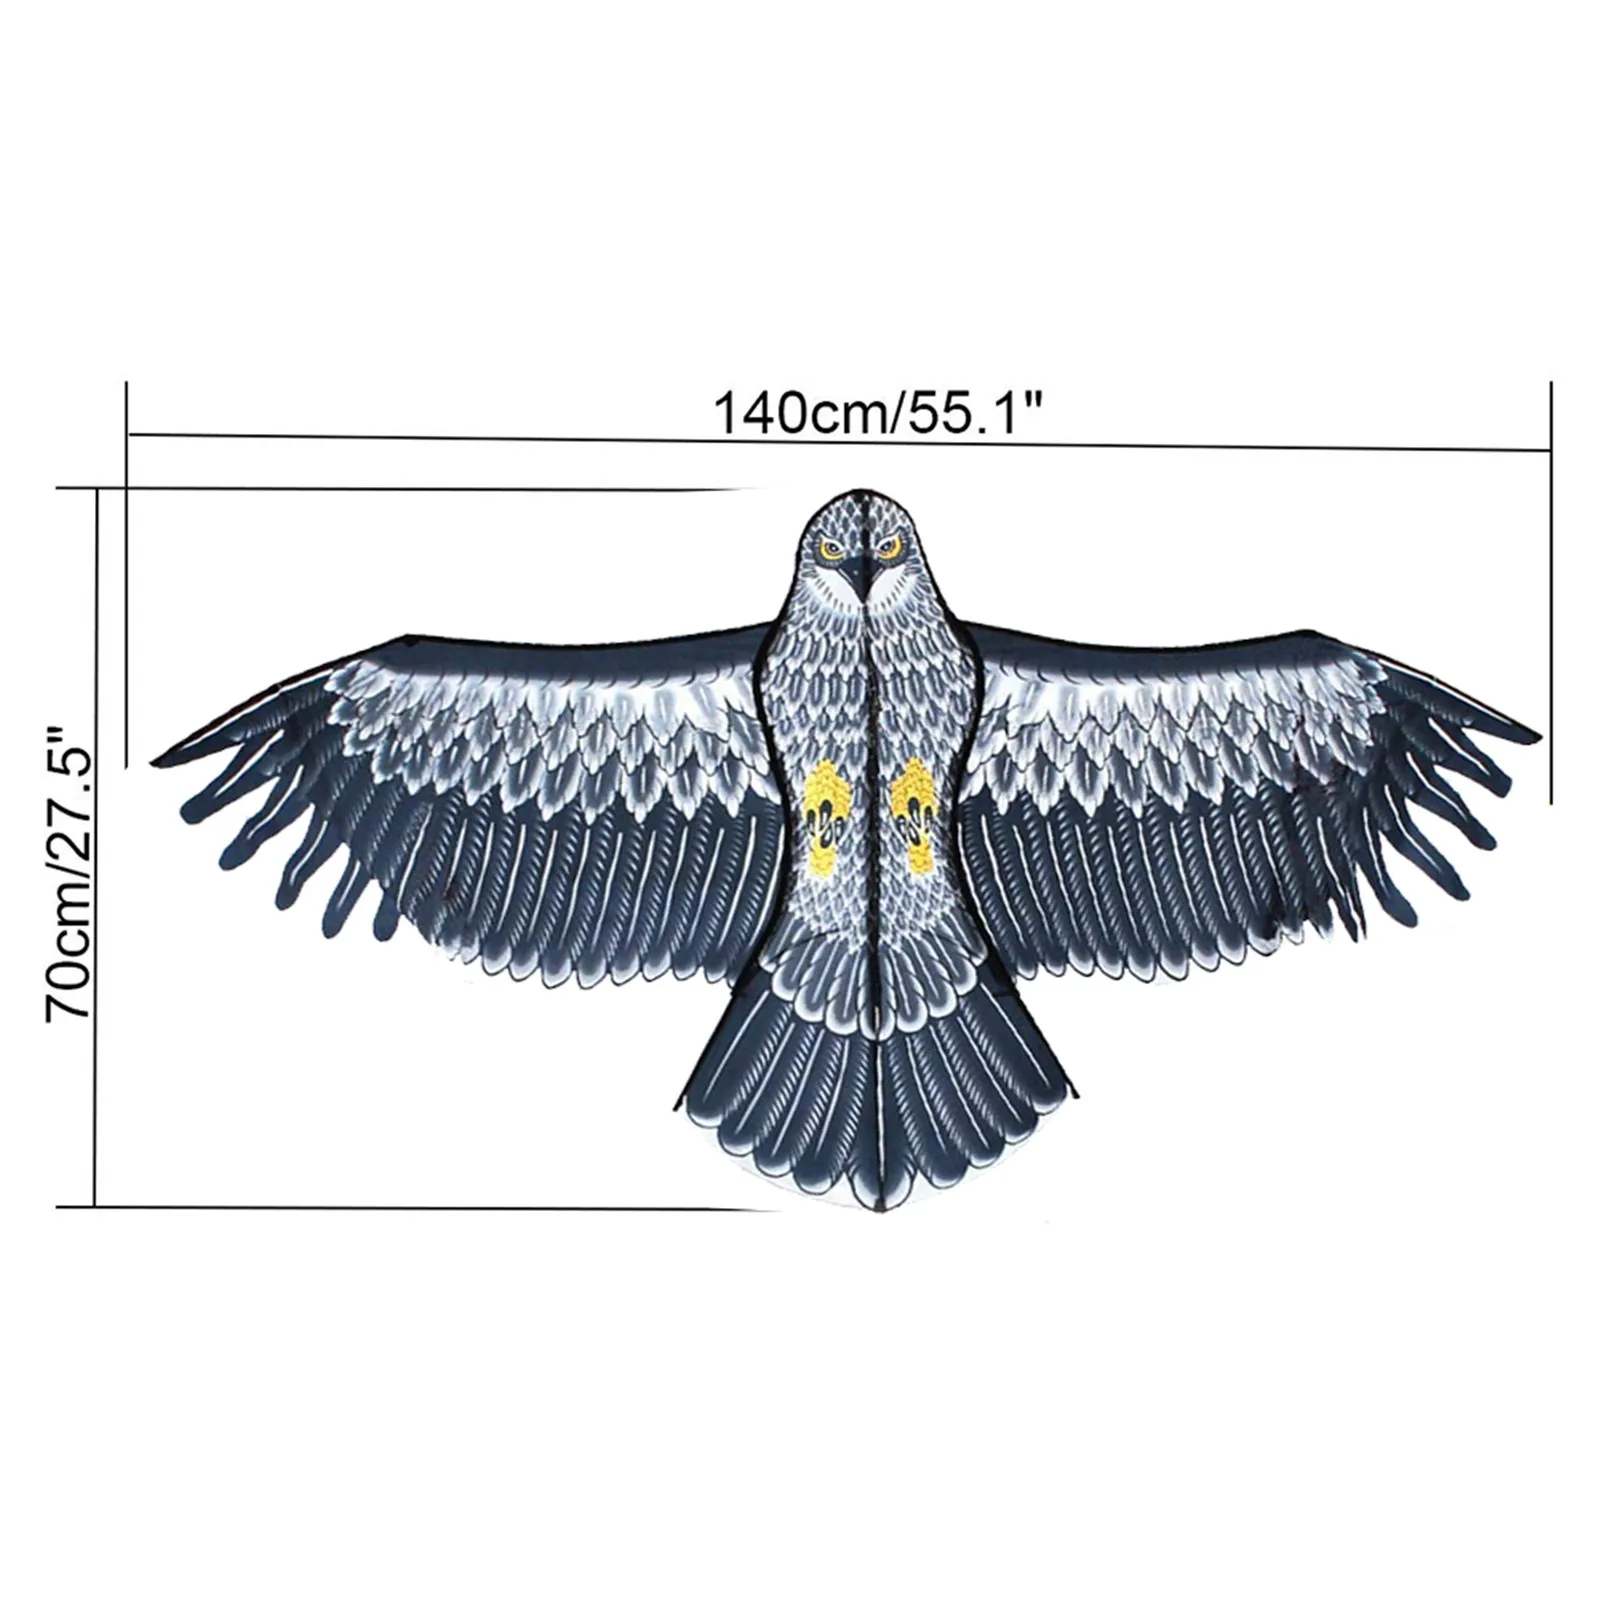 emulação repelente de aves águia voando kite scarer pássaro repelente pombo inseto ferramenta controle pragas para espantalho jardim